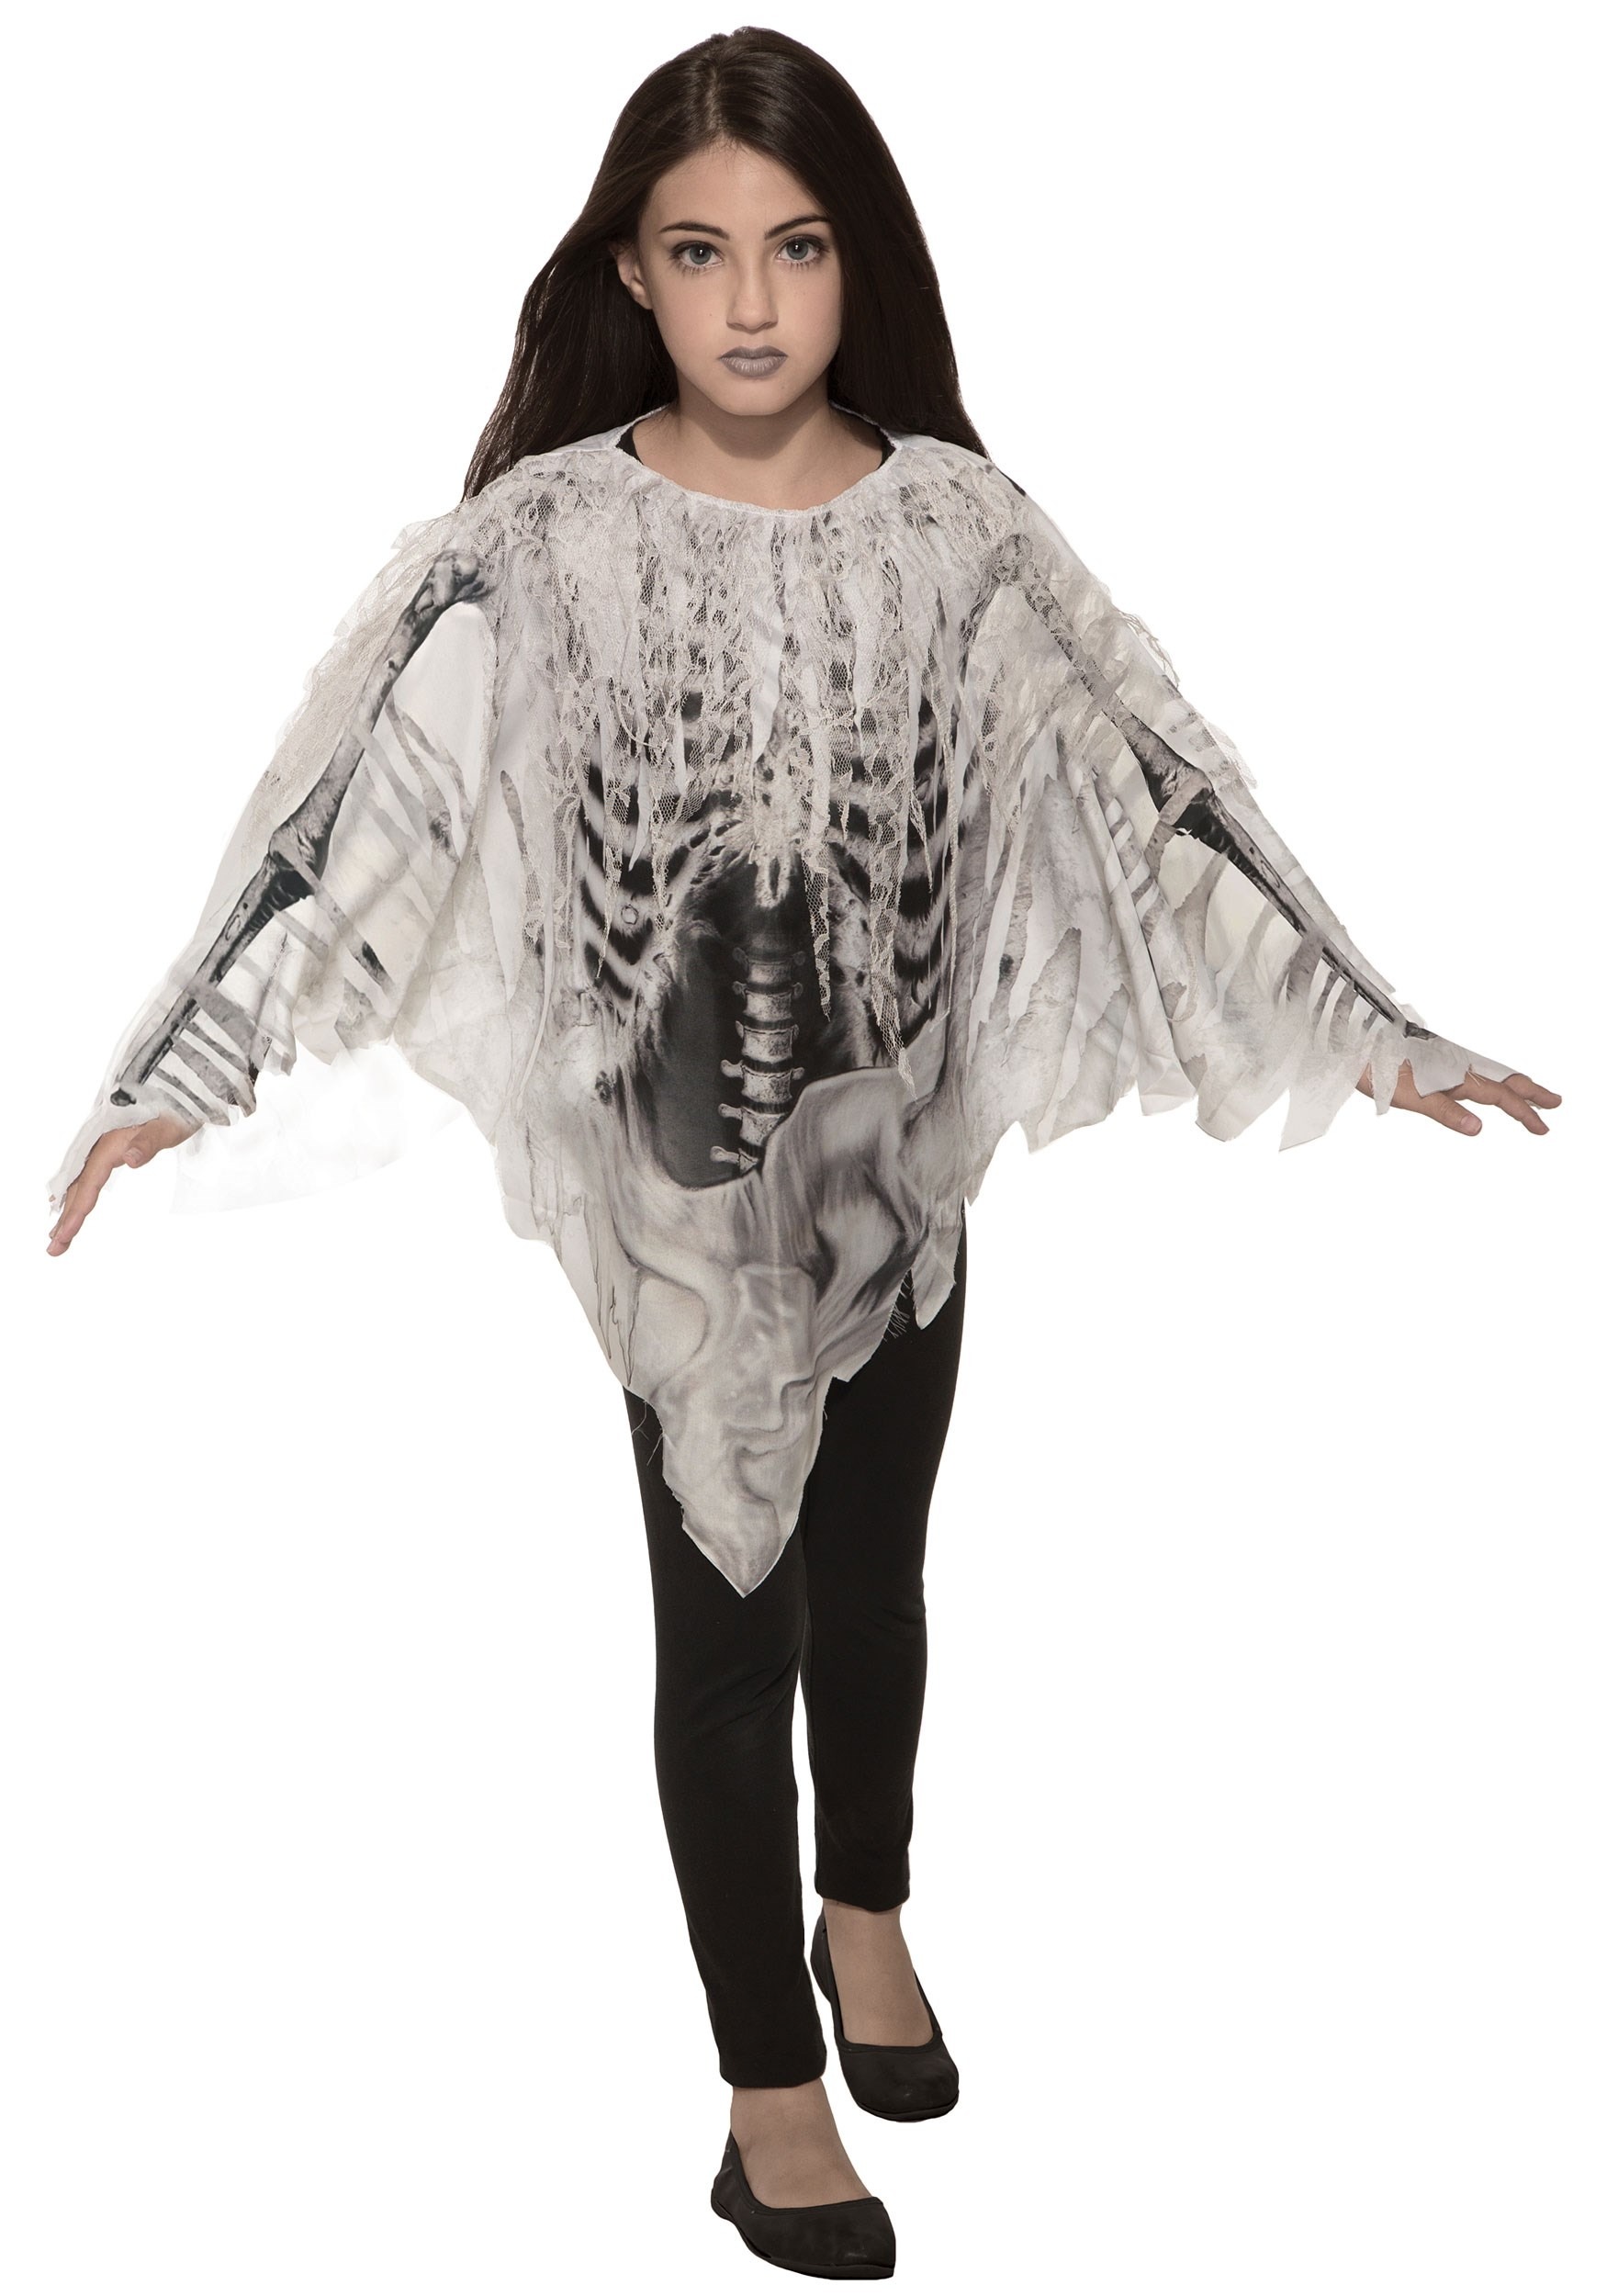 Tattered Skeleton Poncho Costume for Girls